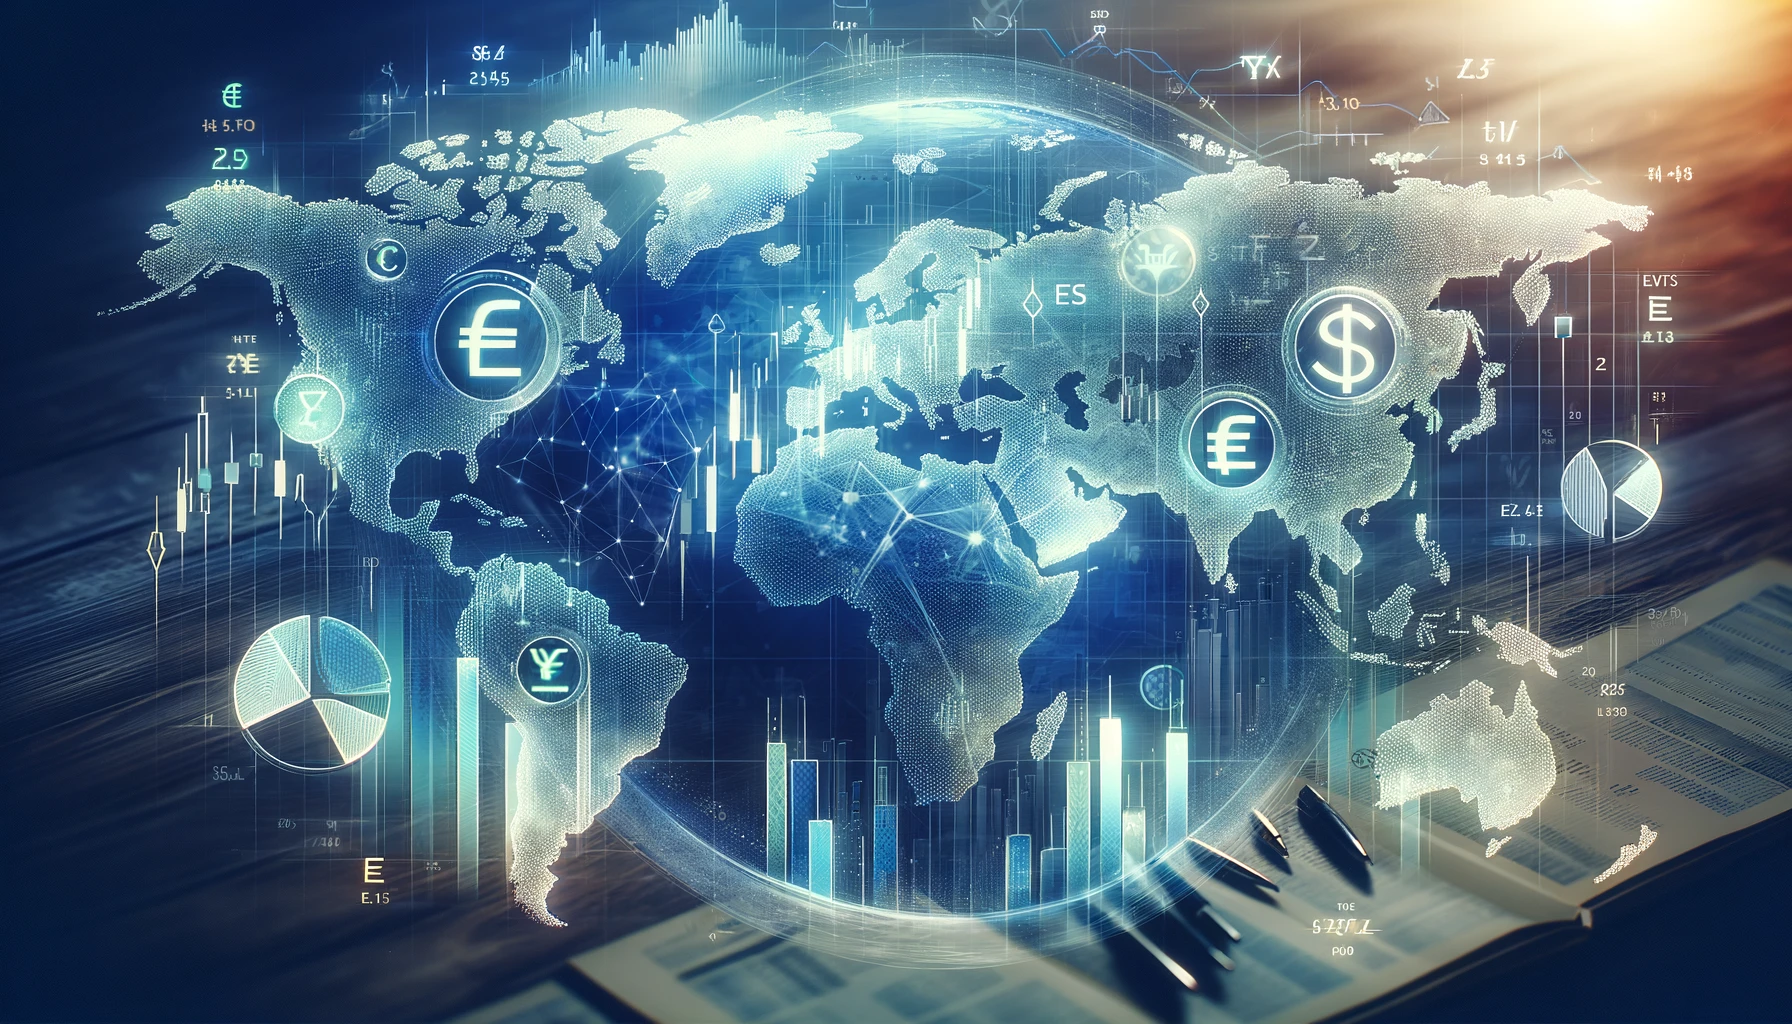 Ein professionelles und ansprechendes Blog-Coverbild für eine WordPress-Seite zum Thema Finanzen und Investitionen. Es zeigt eine moderne, digitale Darstellung einer Weltkarte, überlagert mit verschiedenen Finanzsymbolen wie Währungszeichen, Balkendiagrammen und Kreisdiagrammen, die globale Investitionsmöglichkeiten andeuten. Im Fokus stehen ETFs (Exchange Traded Funds), symbolisiert durch Aktien-Ticker und Fond-Diagramme. Die Farbgebung in Blau- und Grüntönen vermittelt Stabilität und Wachstum.